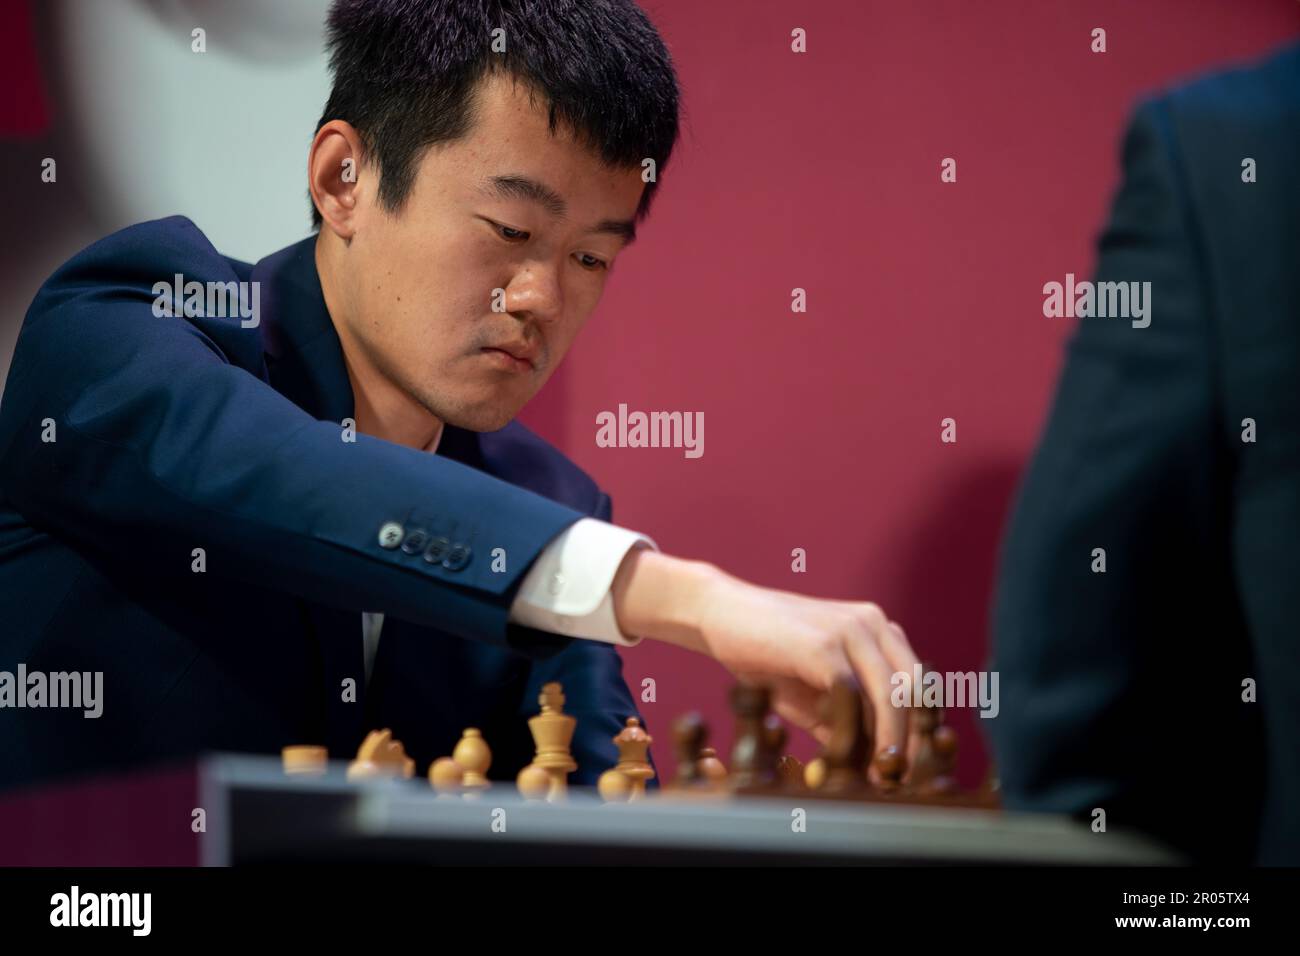 Chi è Ding Liren, il primo campione del mondo di scacchi cinese